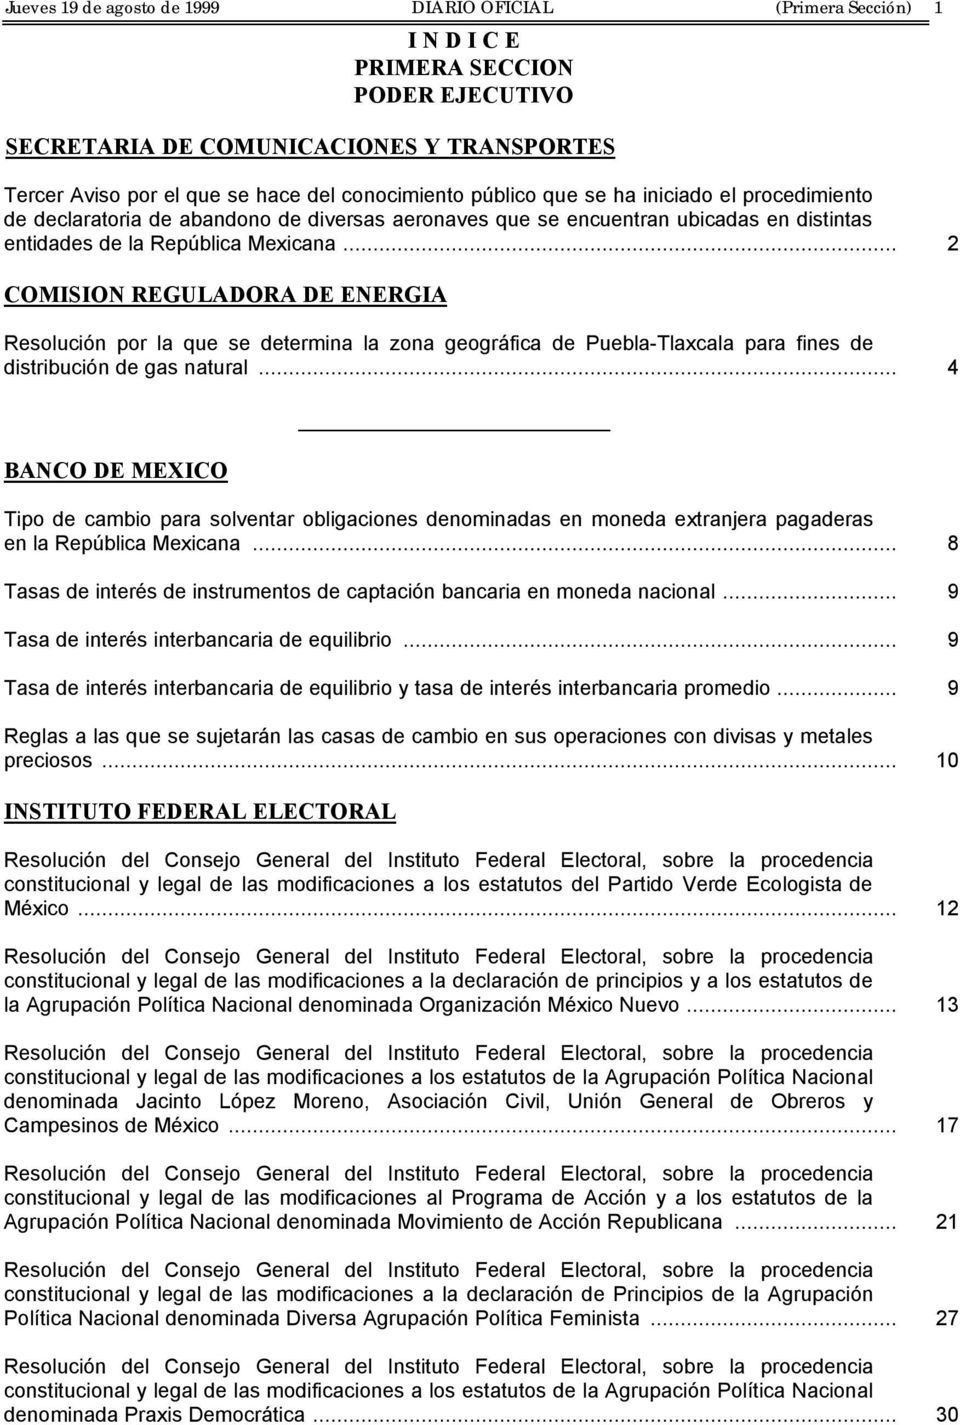 .. 2 COMISION REGULADORA DE ENERGIA Resolución por la que se determina la zona geográfica de Puebla-Tlaxcala para fines de distribución de gas natural.